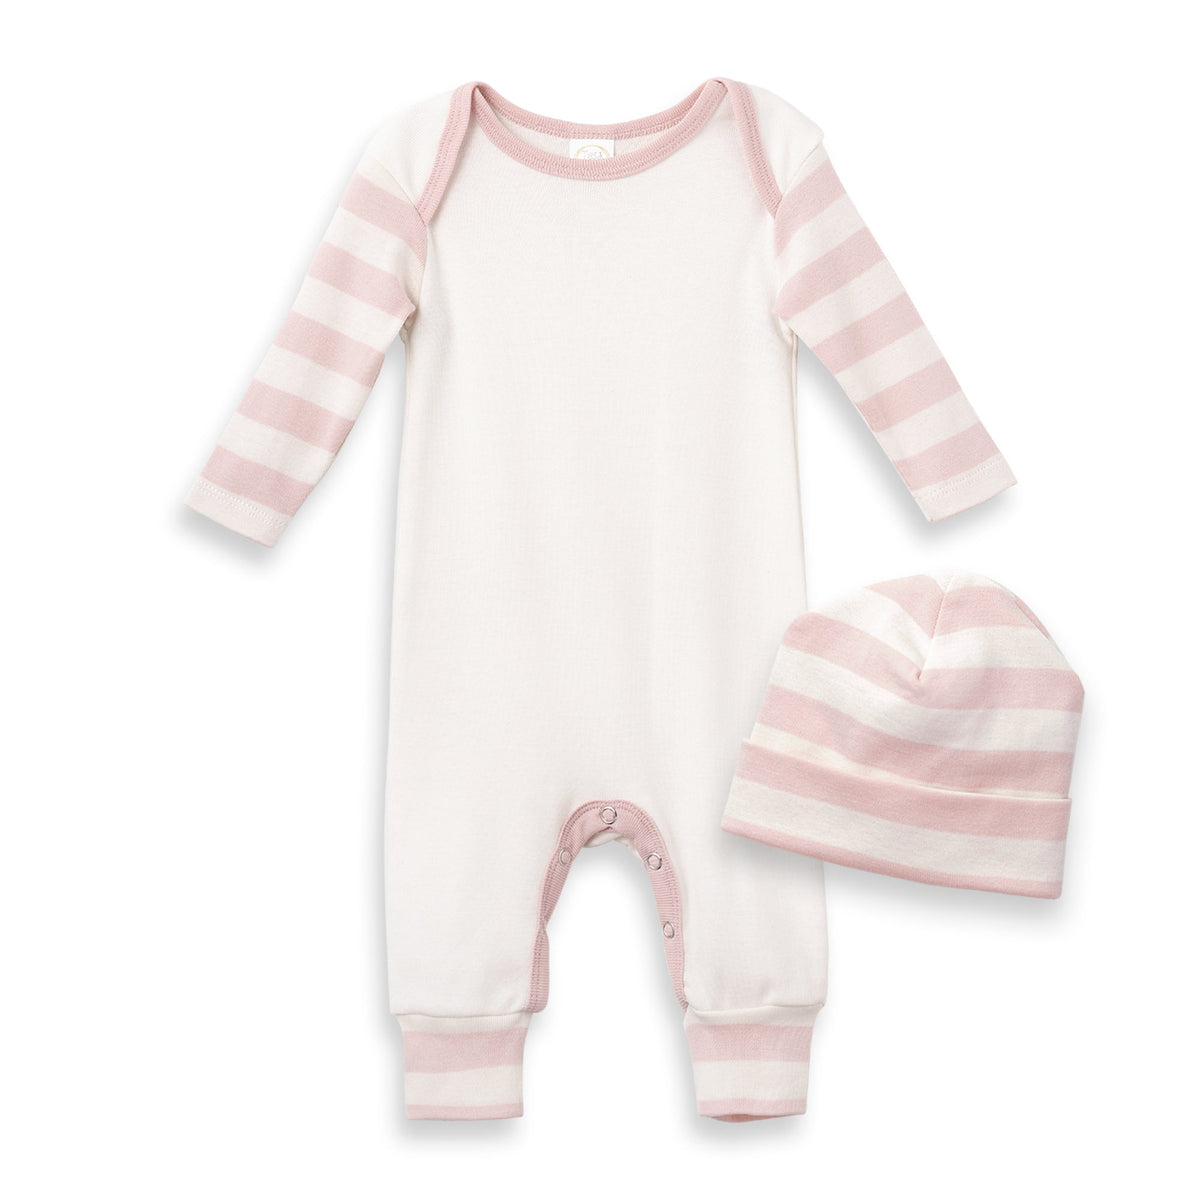 Tesa Babe Baby Girl Gift Sets Copy of 2-Pc Gift Set Pink Stripe